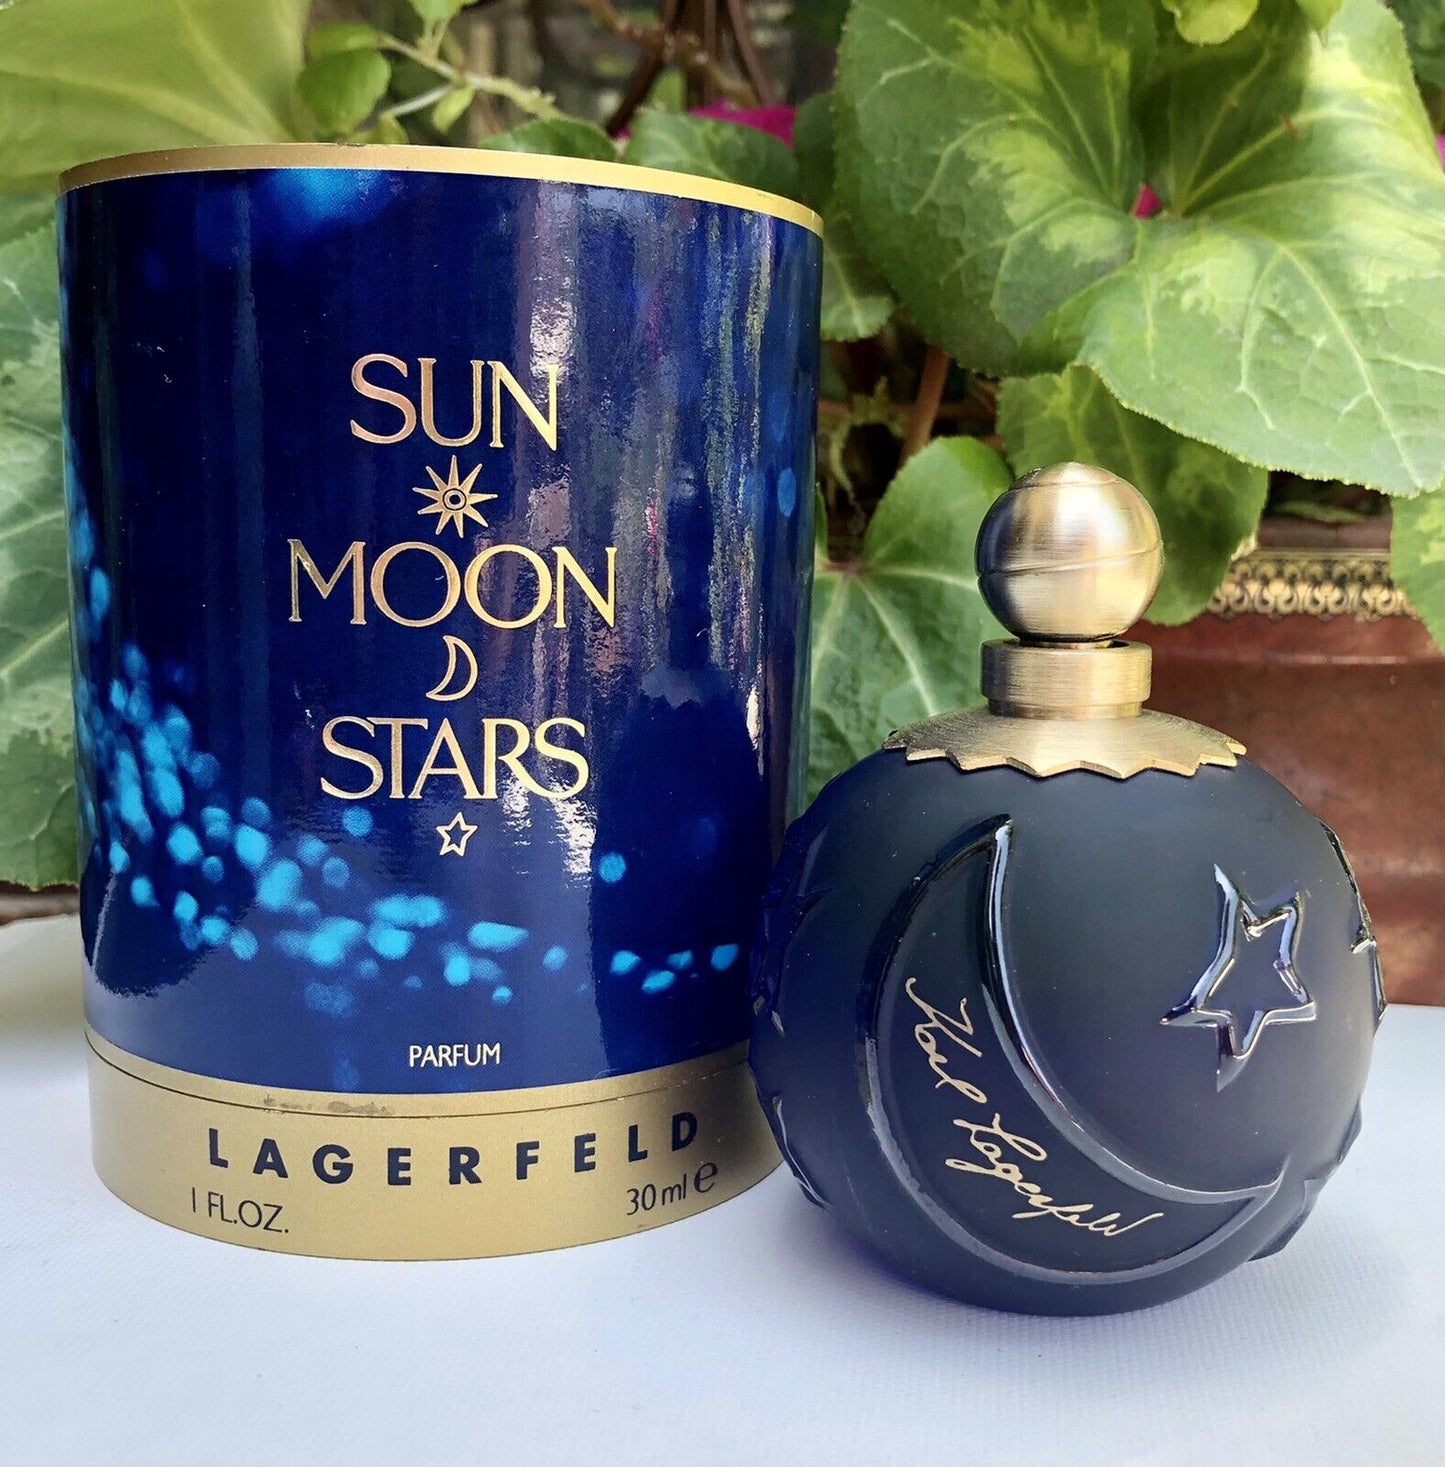 Karl Lagerfeld SUN MOON STARS parfum - F Vault